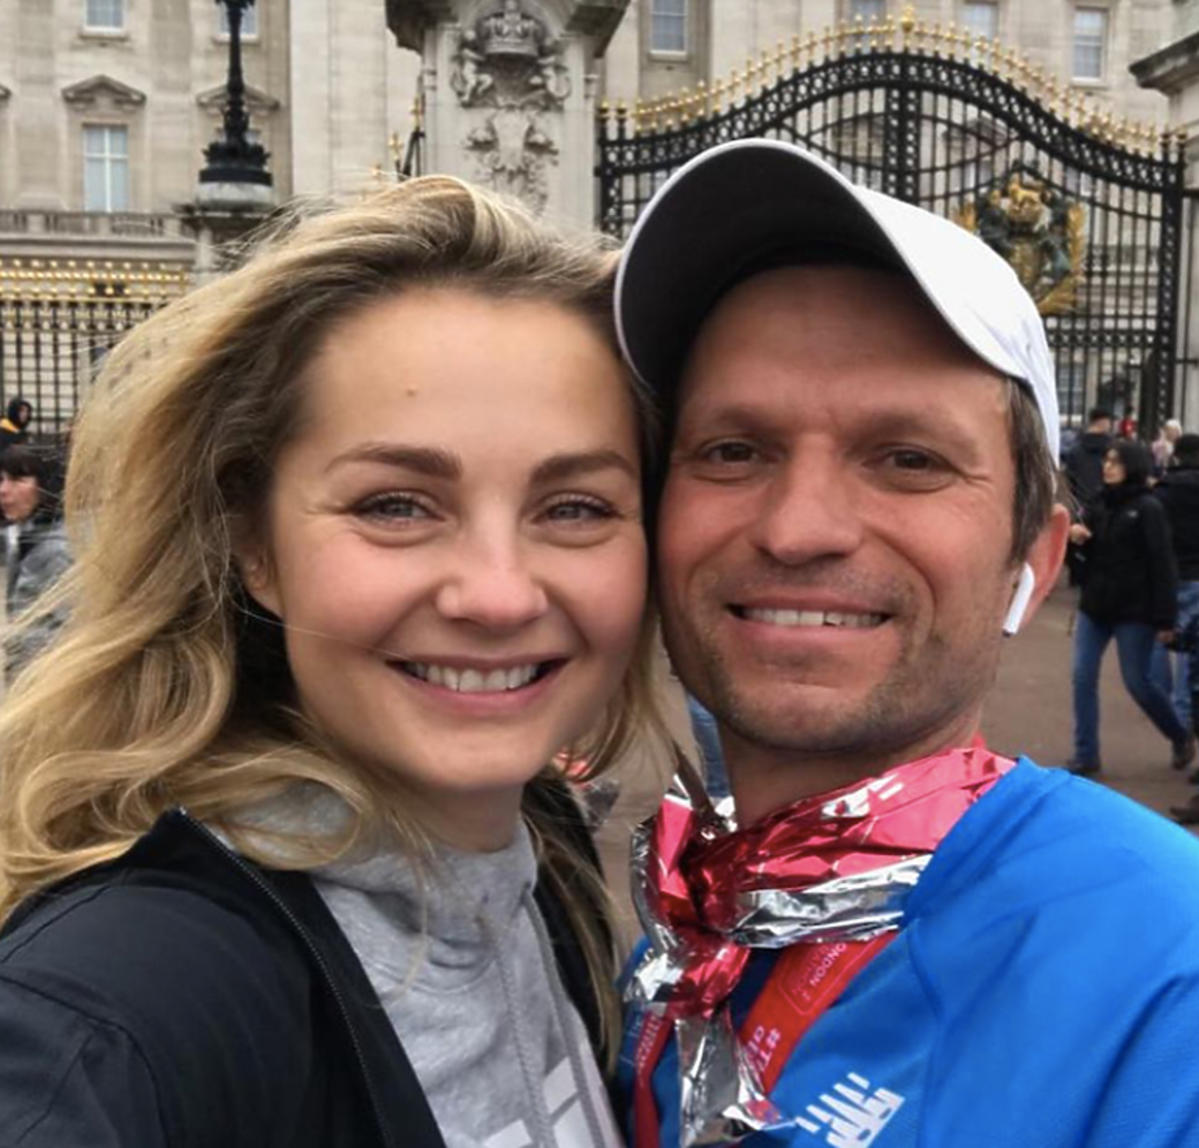 Małgorzata Socha pokazała męża na Instagramie